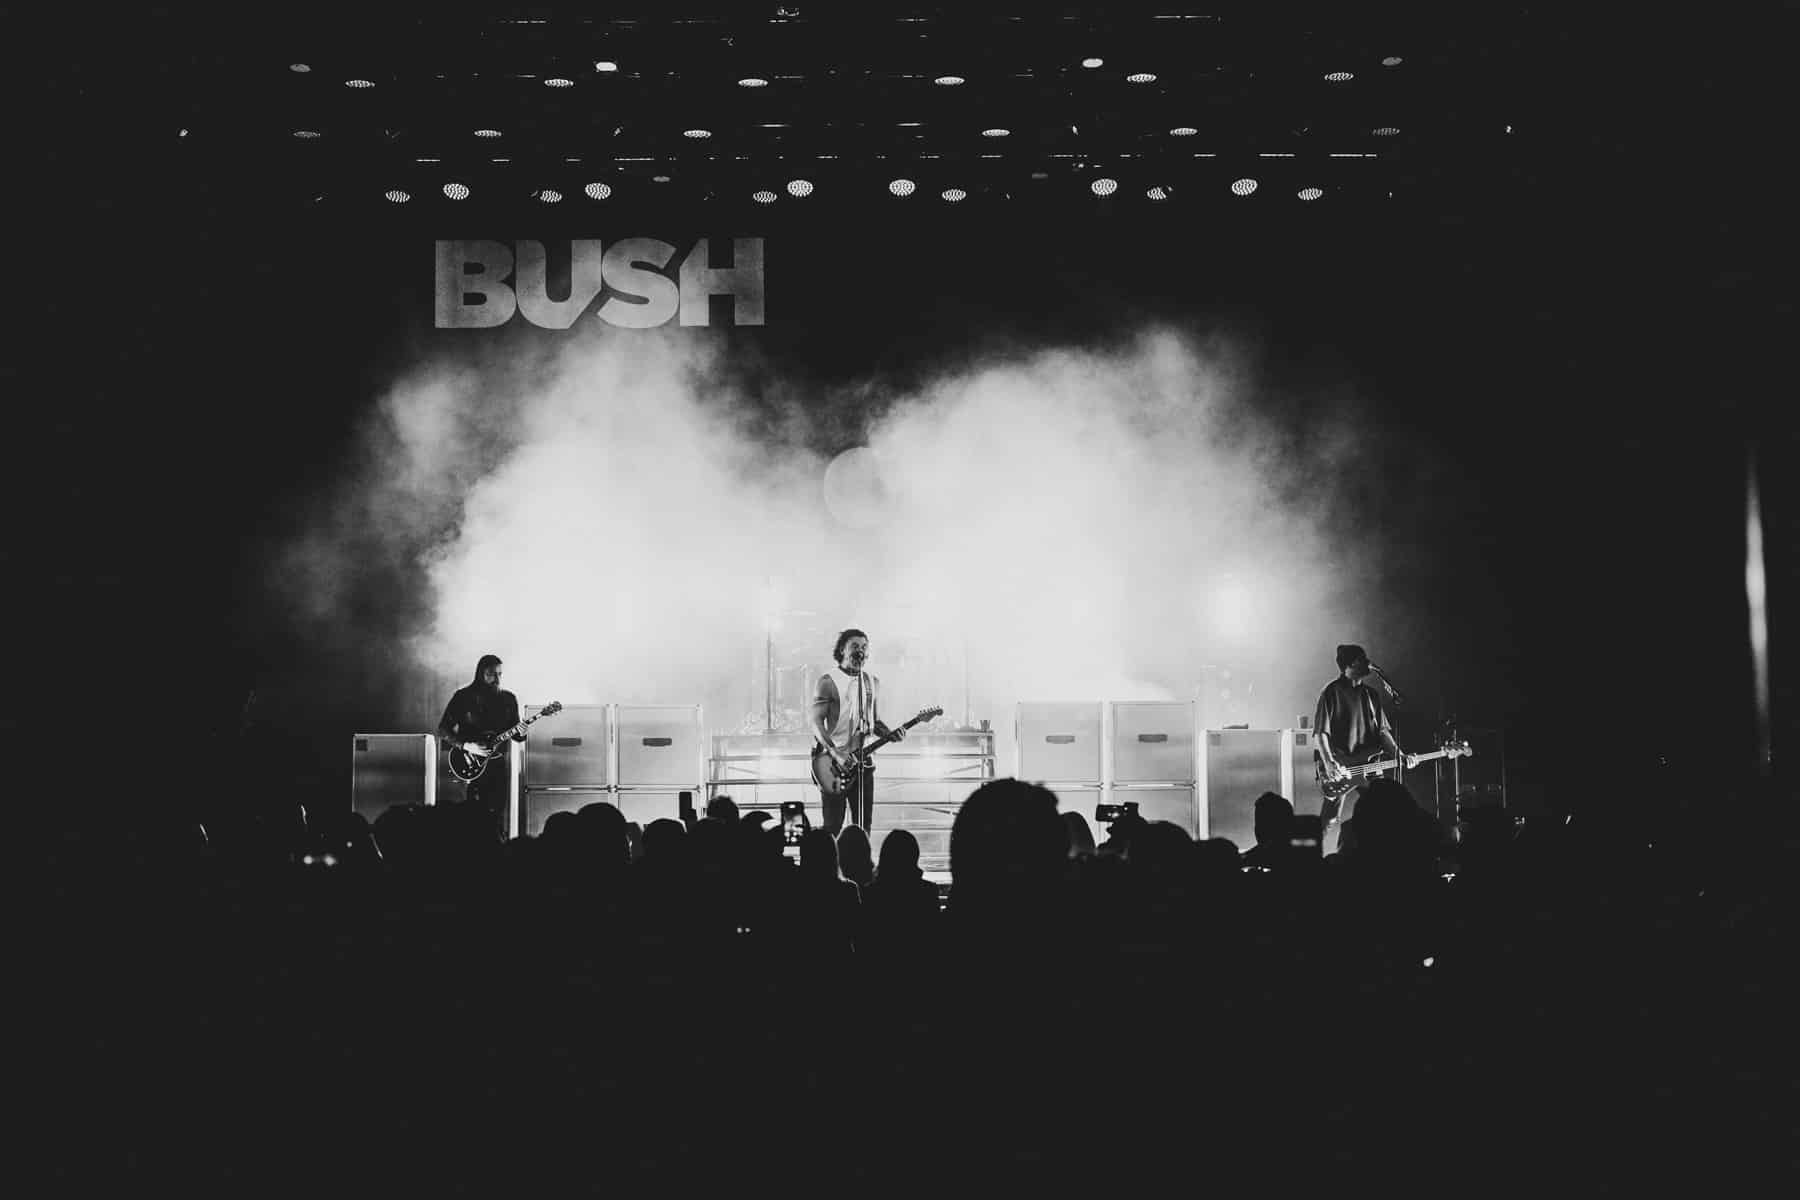 Bush Lights Up The Room in Nashville, TN